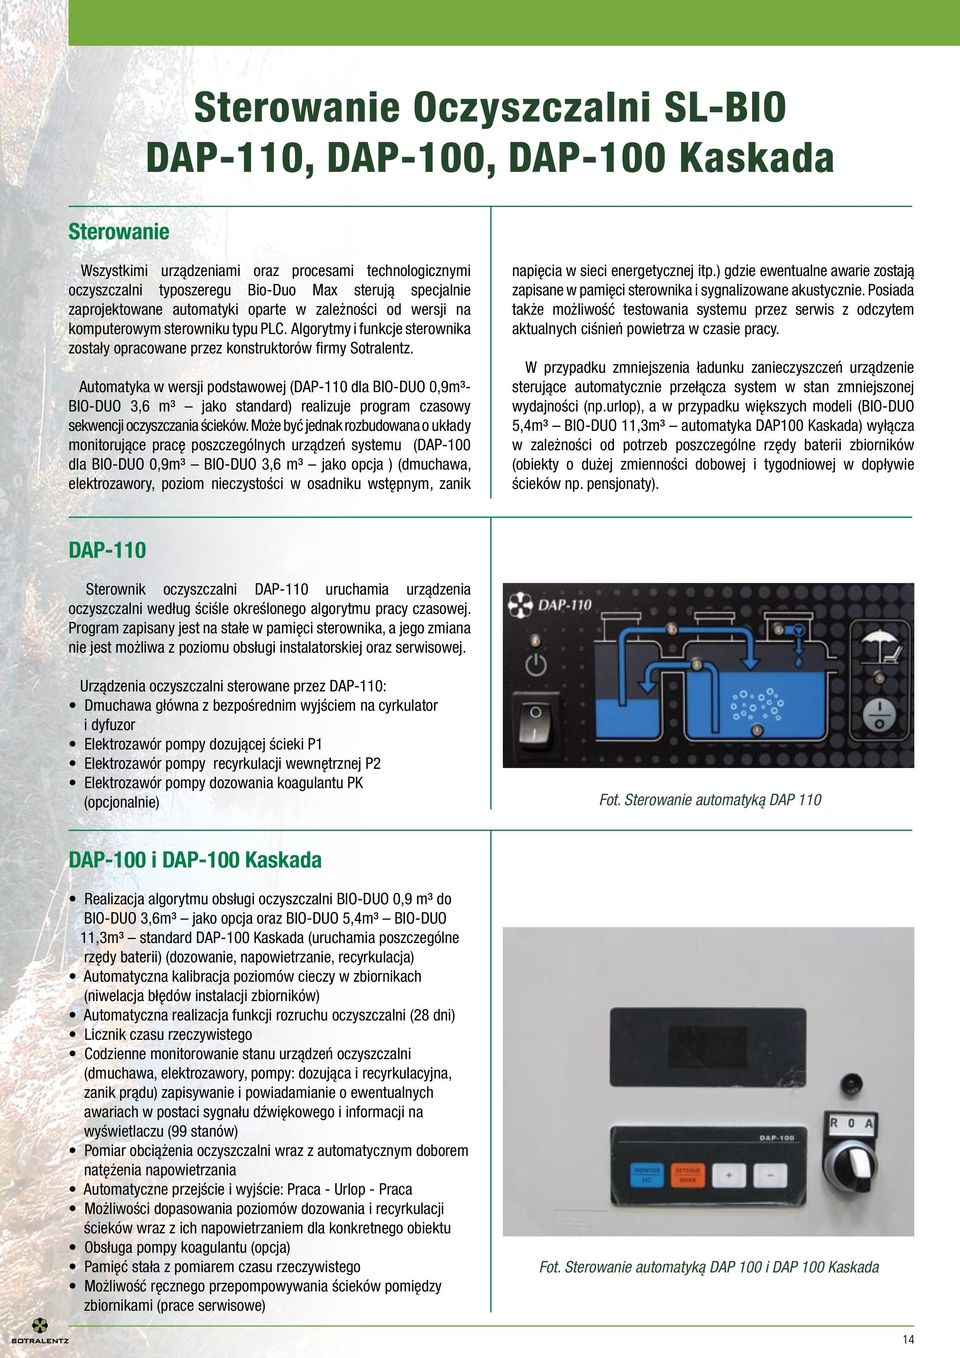 Automatyka w wersji podstawowej (DAP-110 dla BIO-DUO 0,9m³- BIO-DUO 3,6 m³ jako standard) realizuje program czasowy sekwencji oczyszczania ścieków.